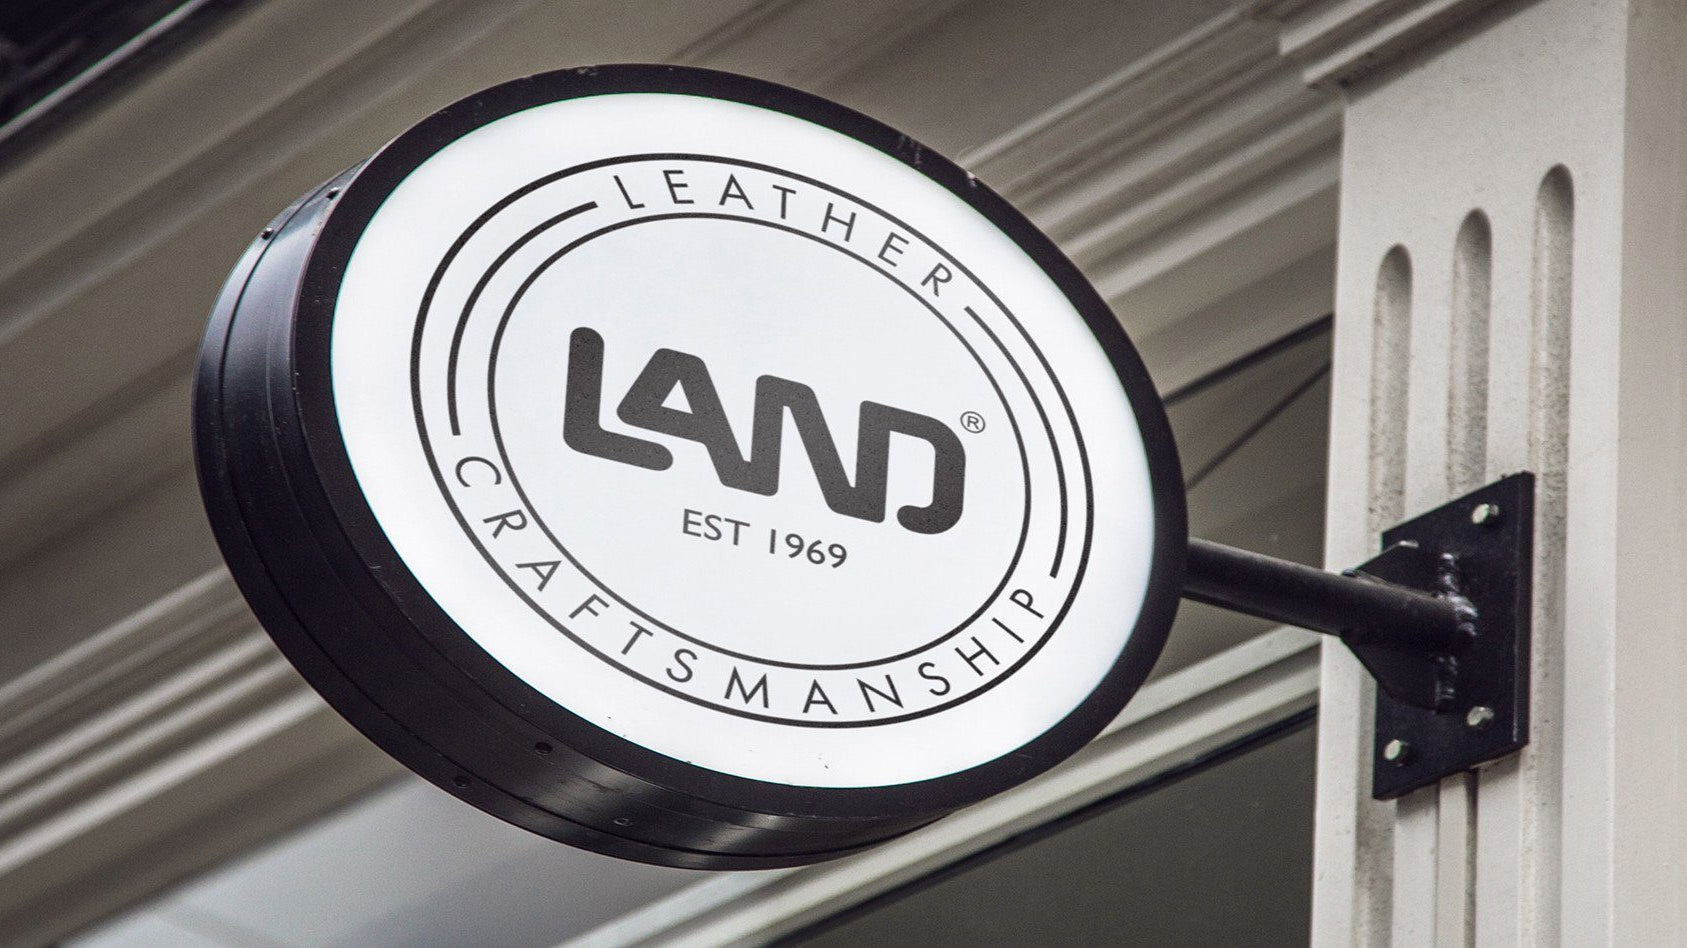 New LAND Store Opening - Guyana